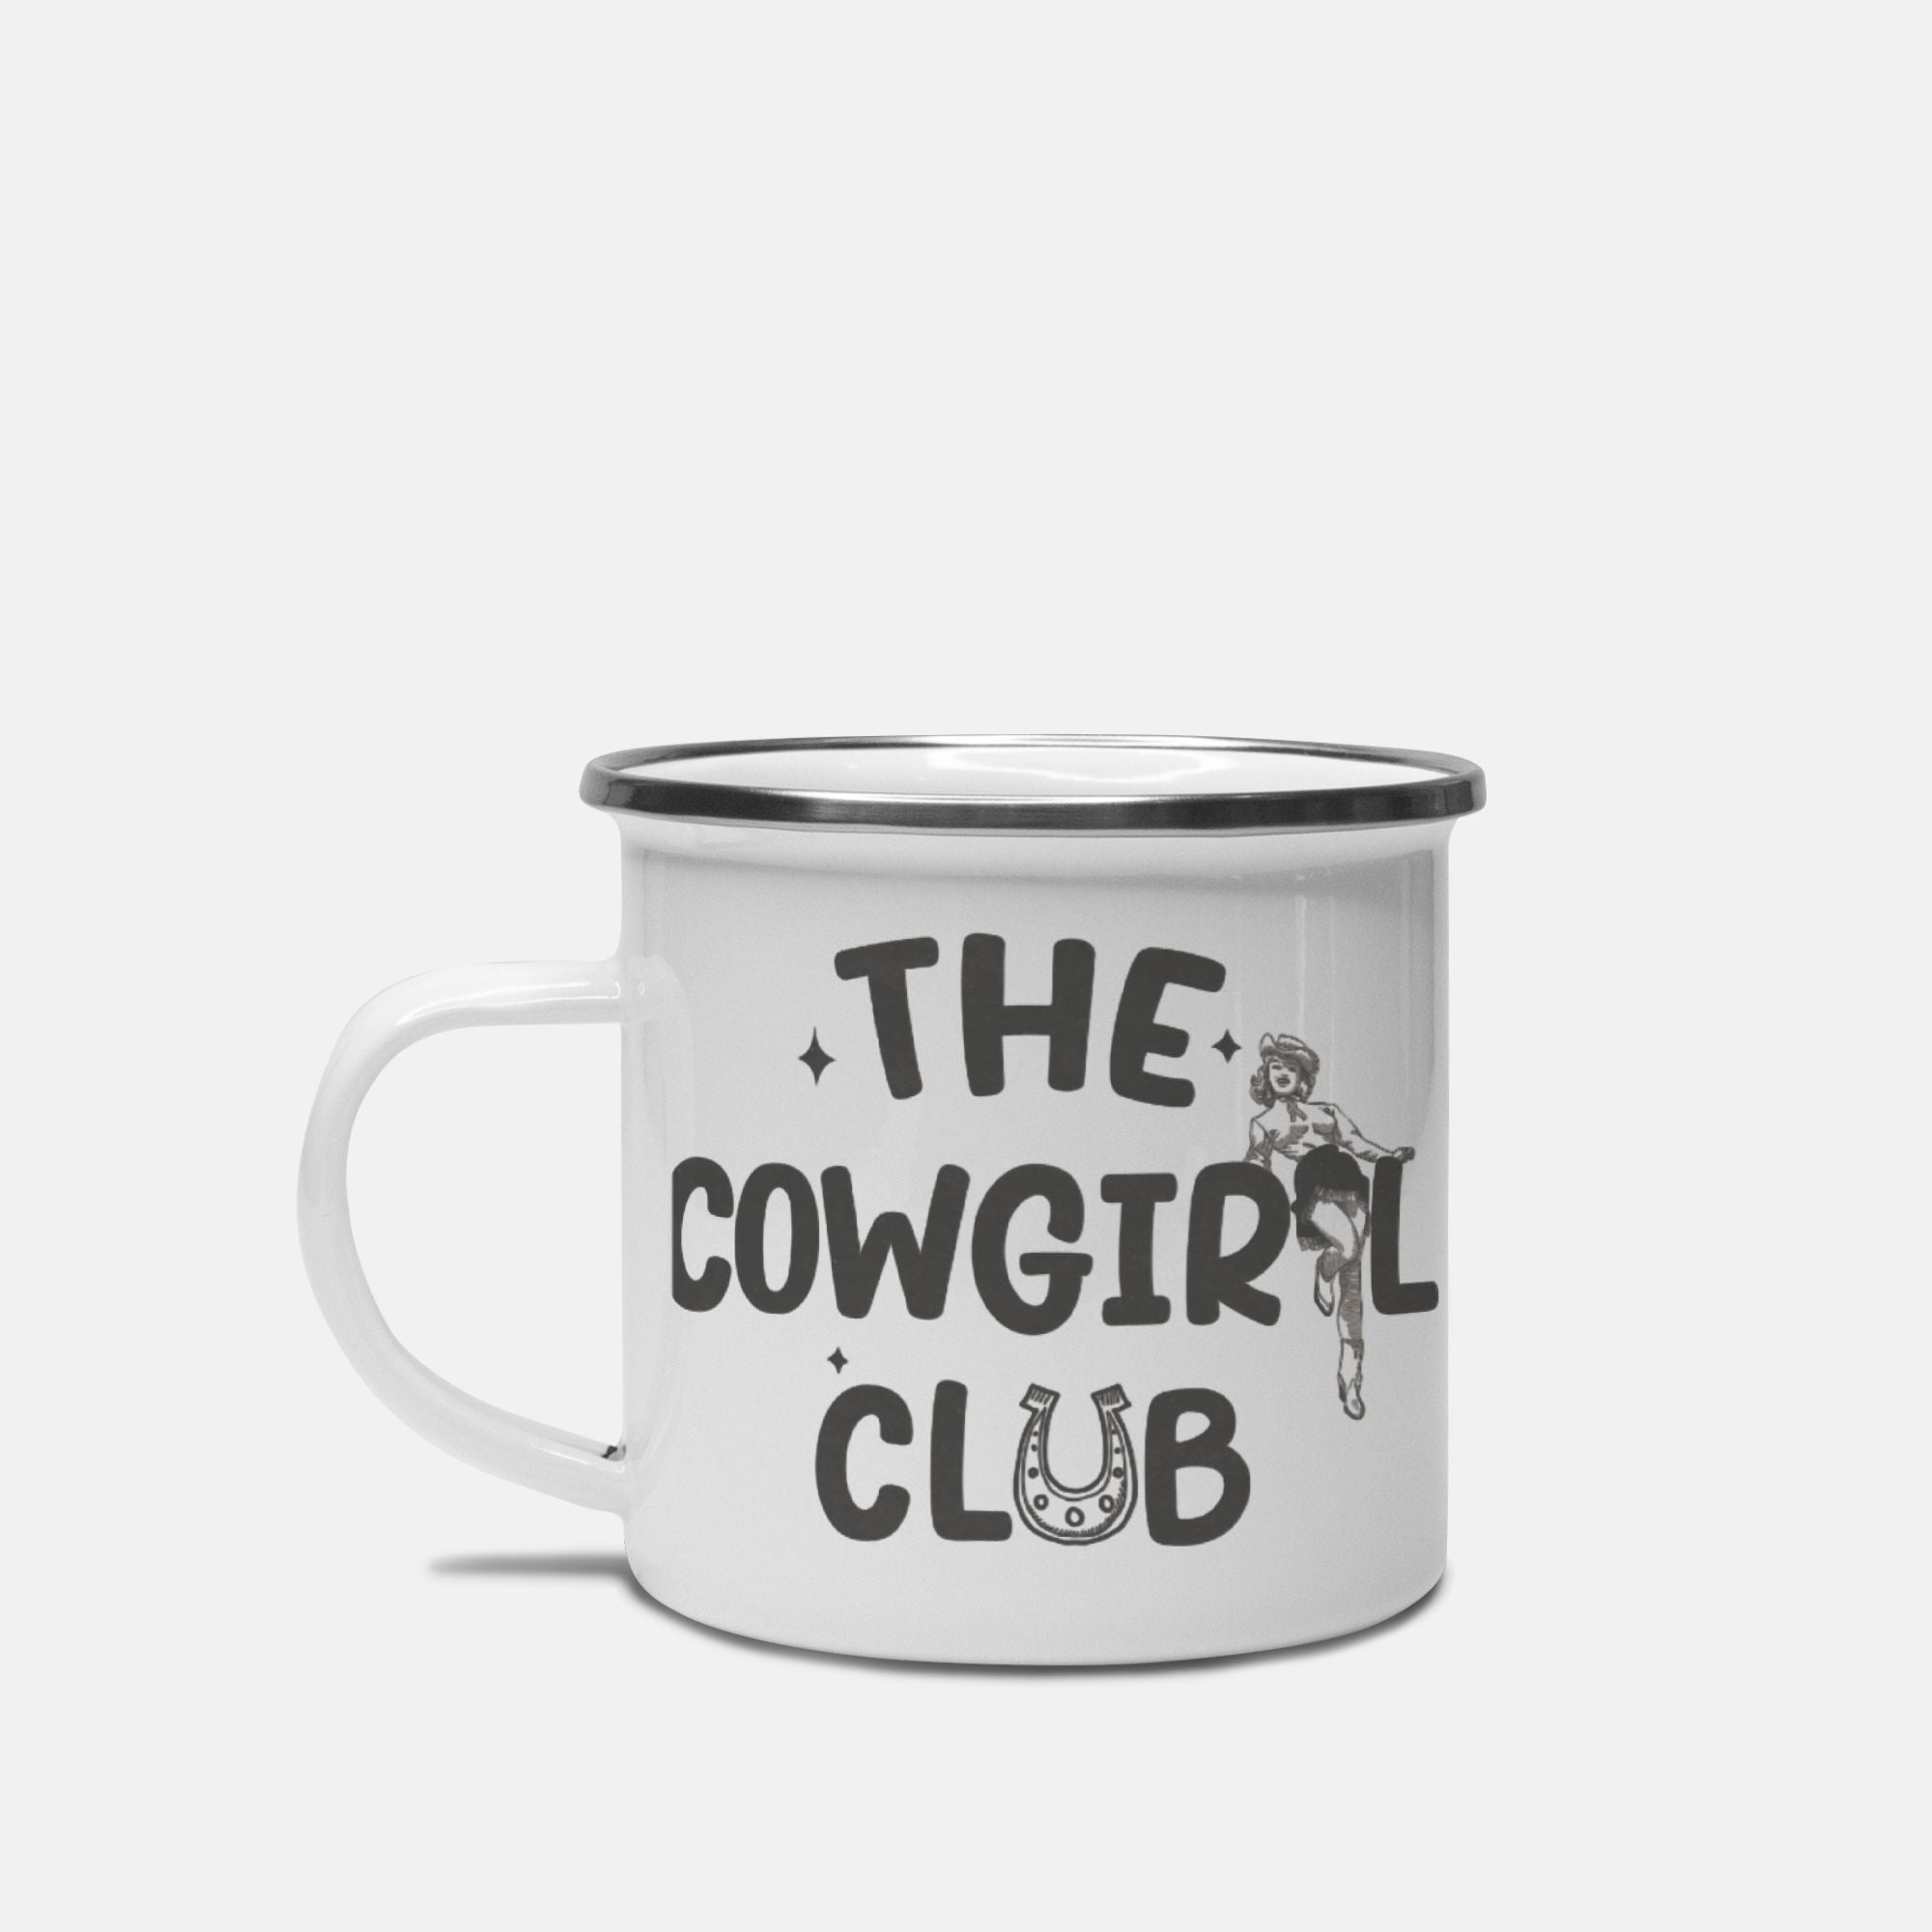 The Cowgirl Club Camp Mug 10 oz.